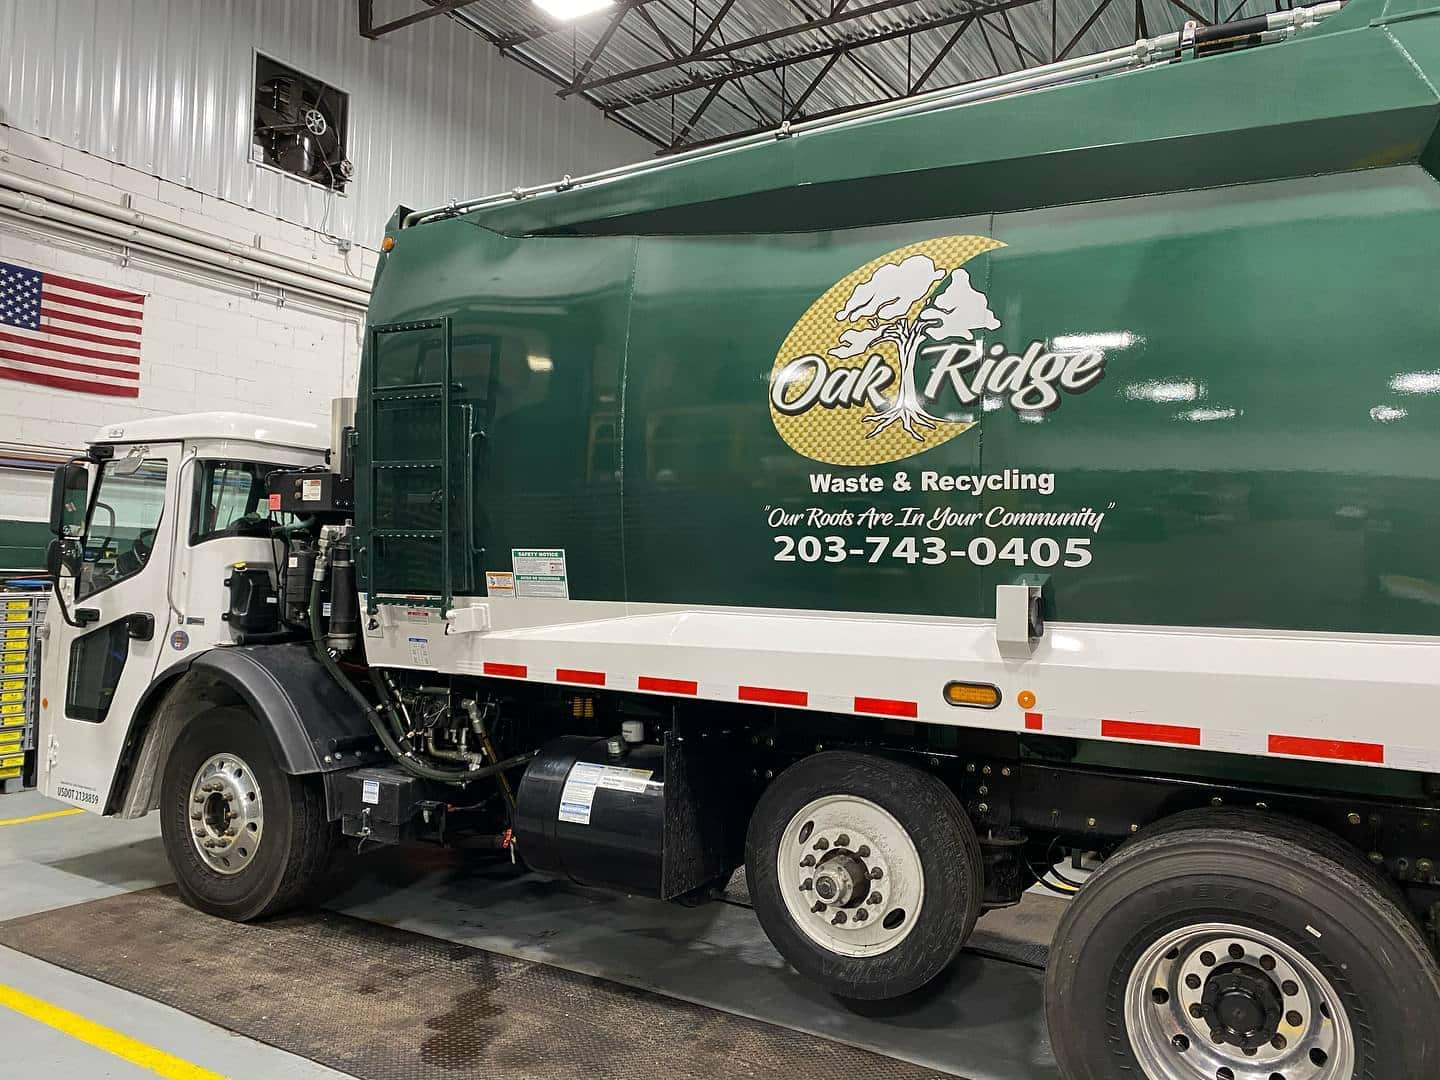 Oak Ridge Waste & Recycling Truck